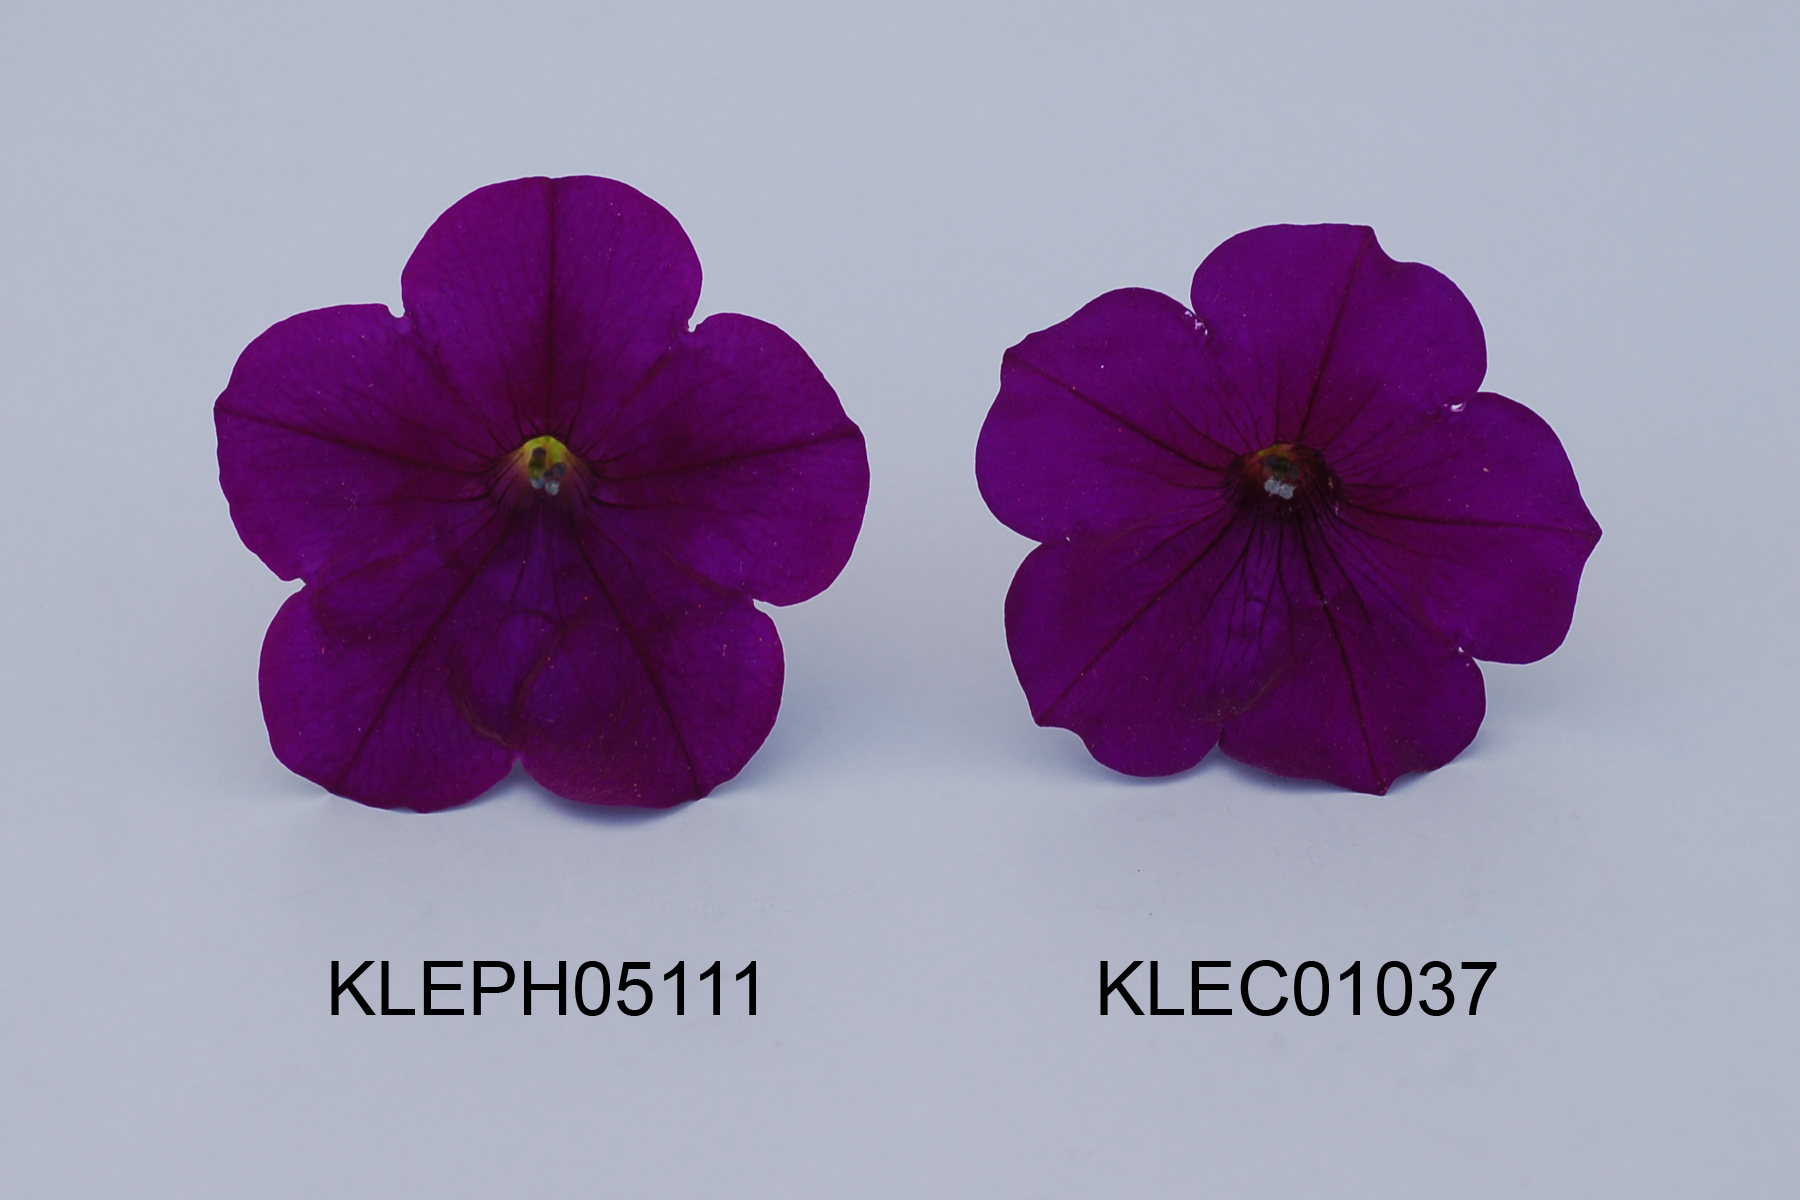 KLEPH05111